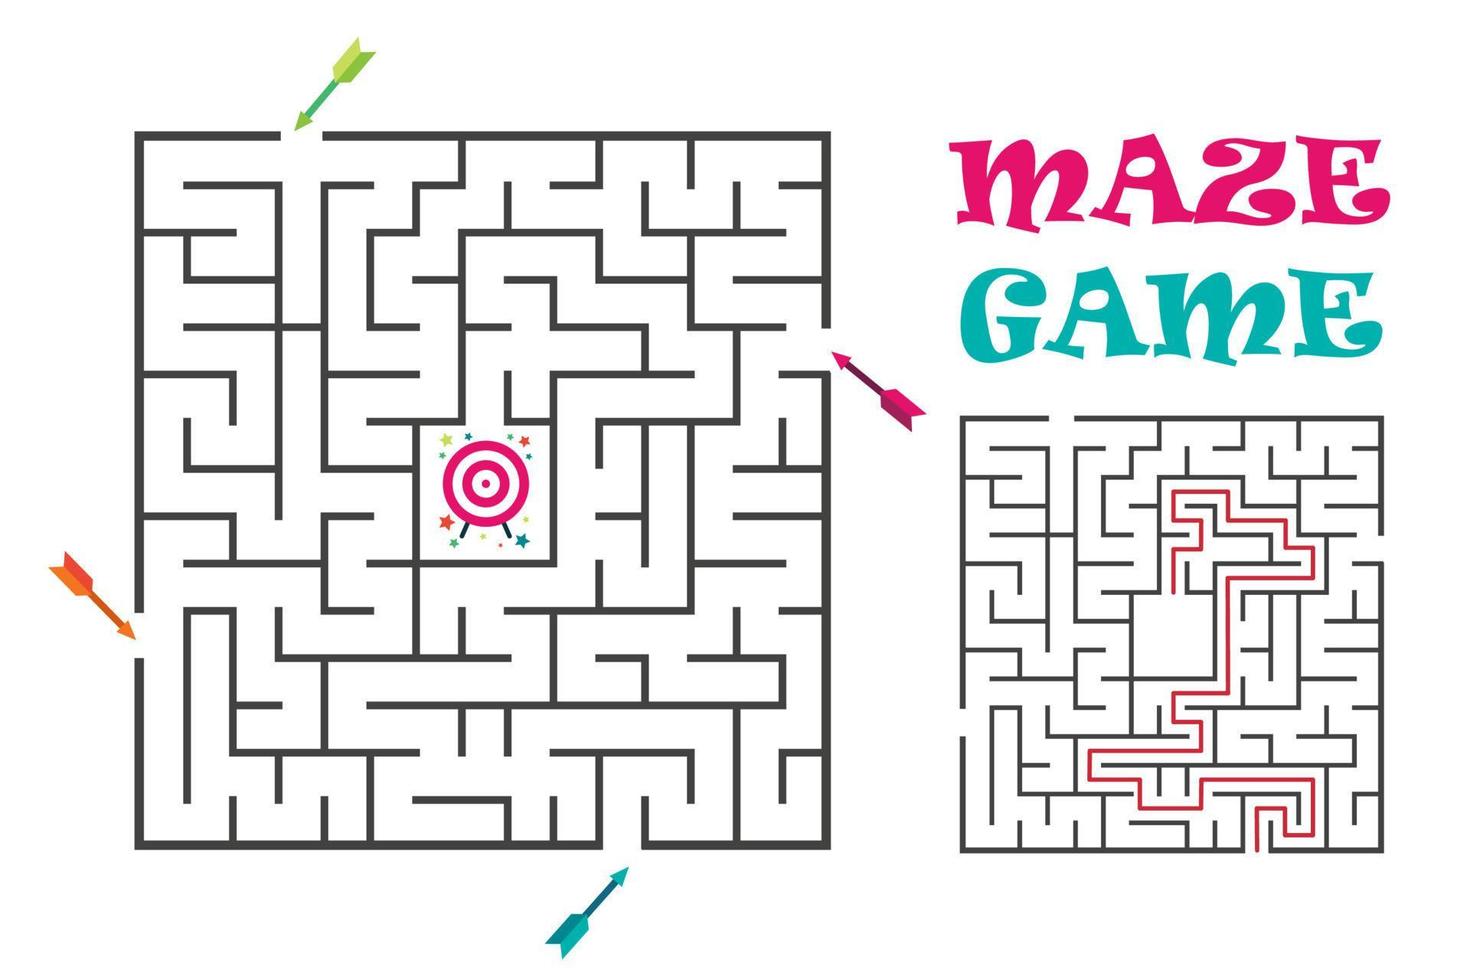 gioco labirinto quadrato per bambini. enigma logico con bersaglio e frecce. 4 ingressi e una giusta strada da percorrere. illustrazione piatta vettoriale isolata su sfondo bianco.